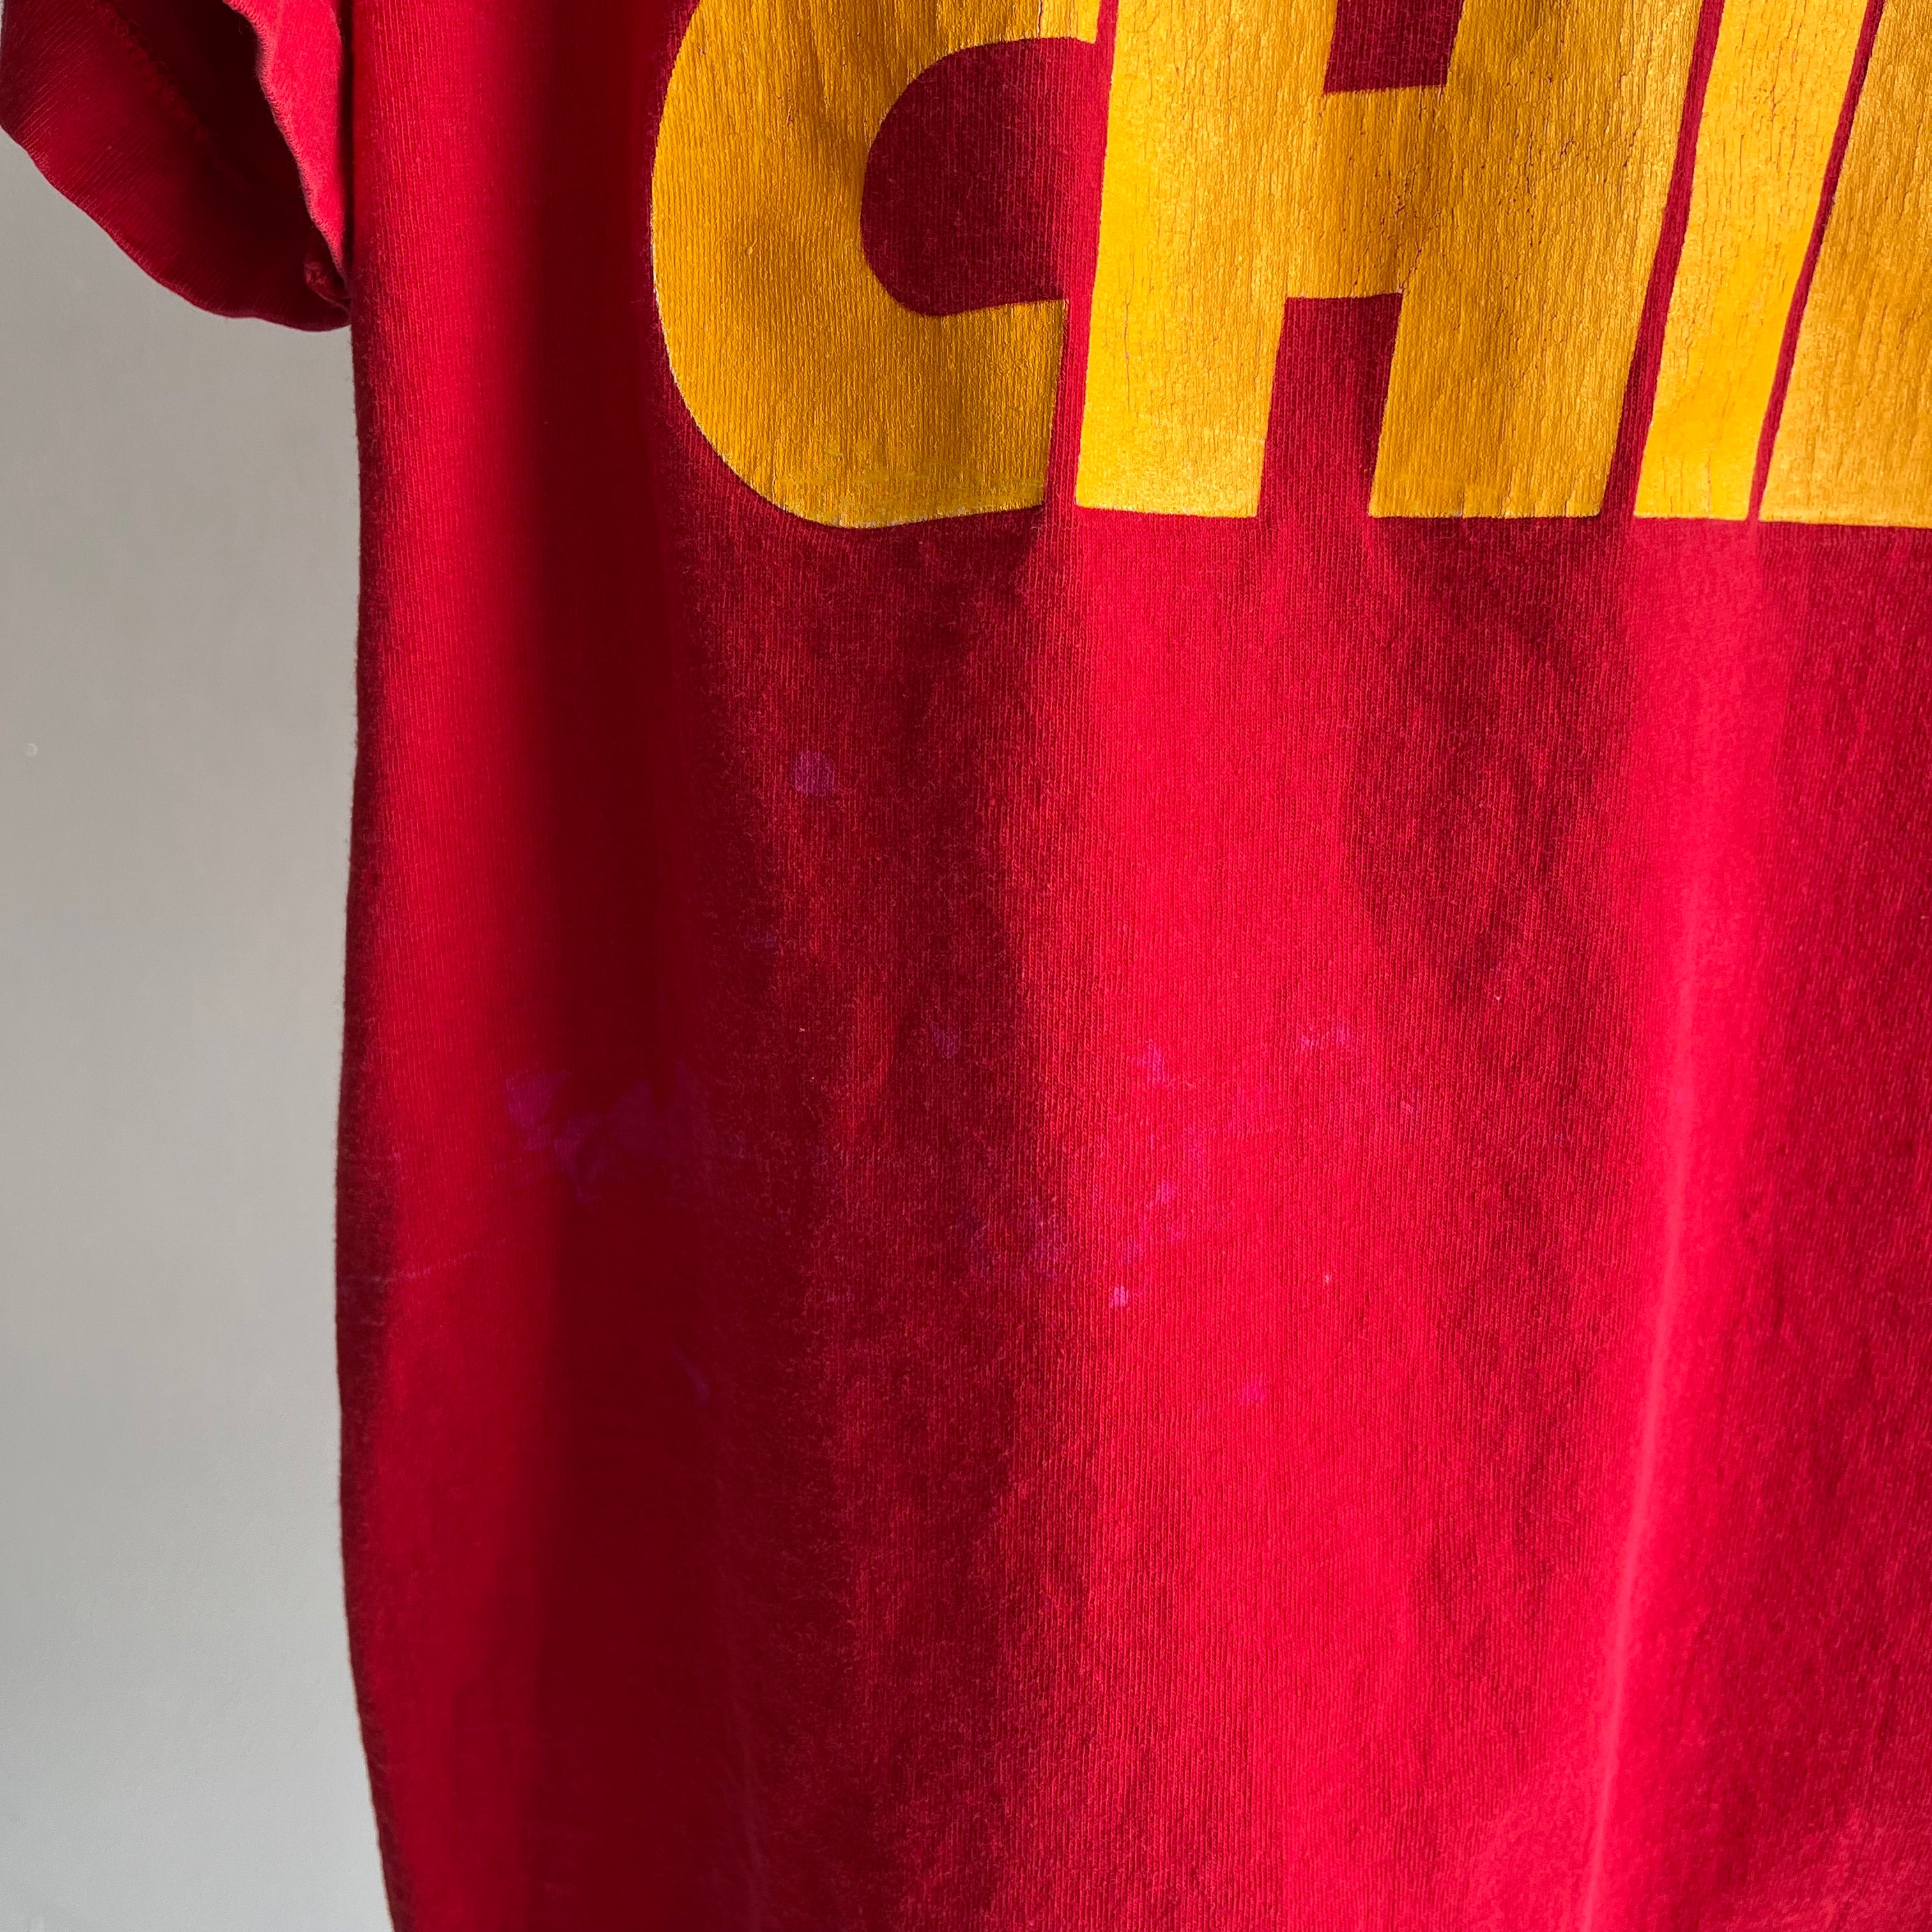 T-shirt des Chiefs de Kansas City 1994 - LES CHAMPIONS !